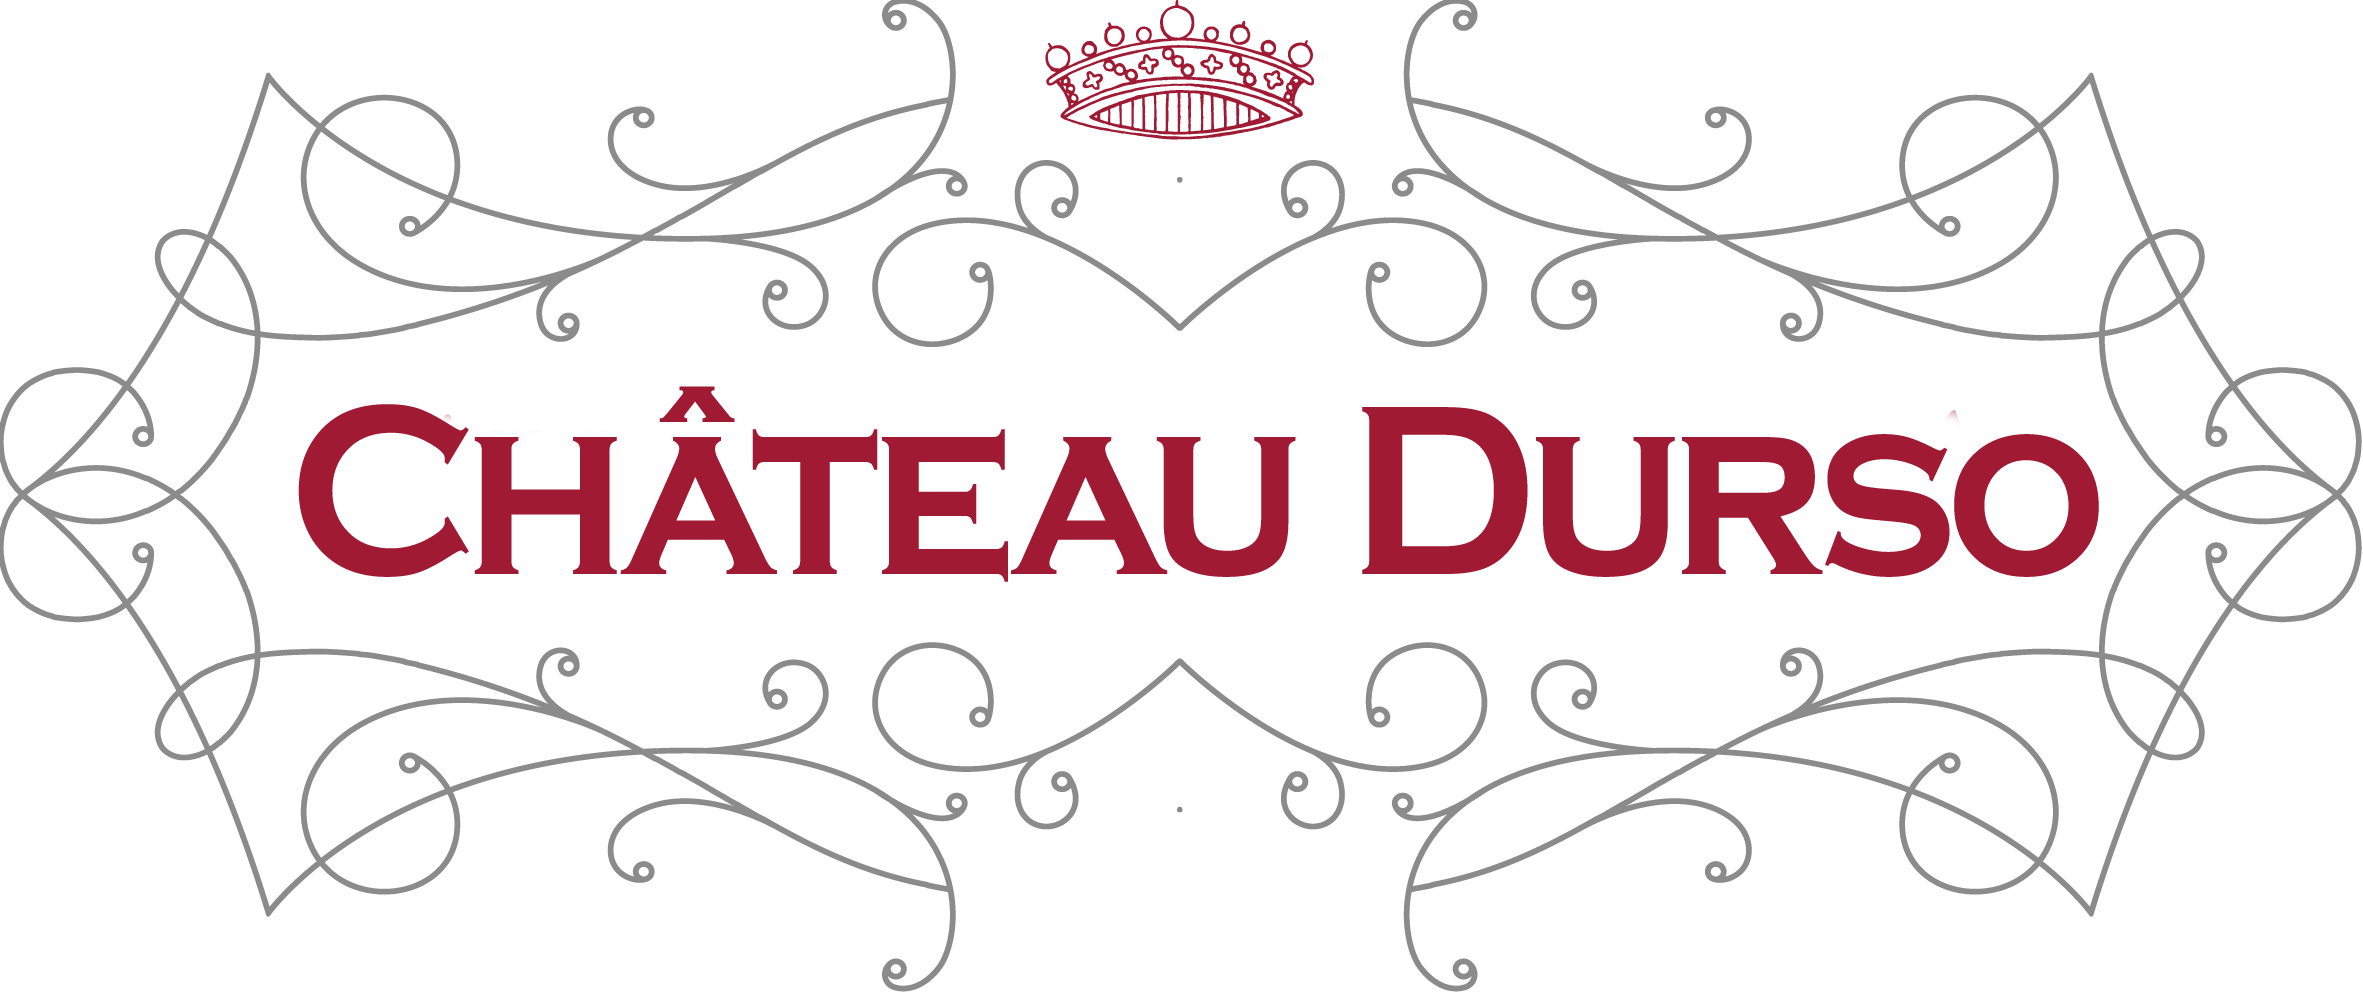 Château Durso logo